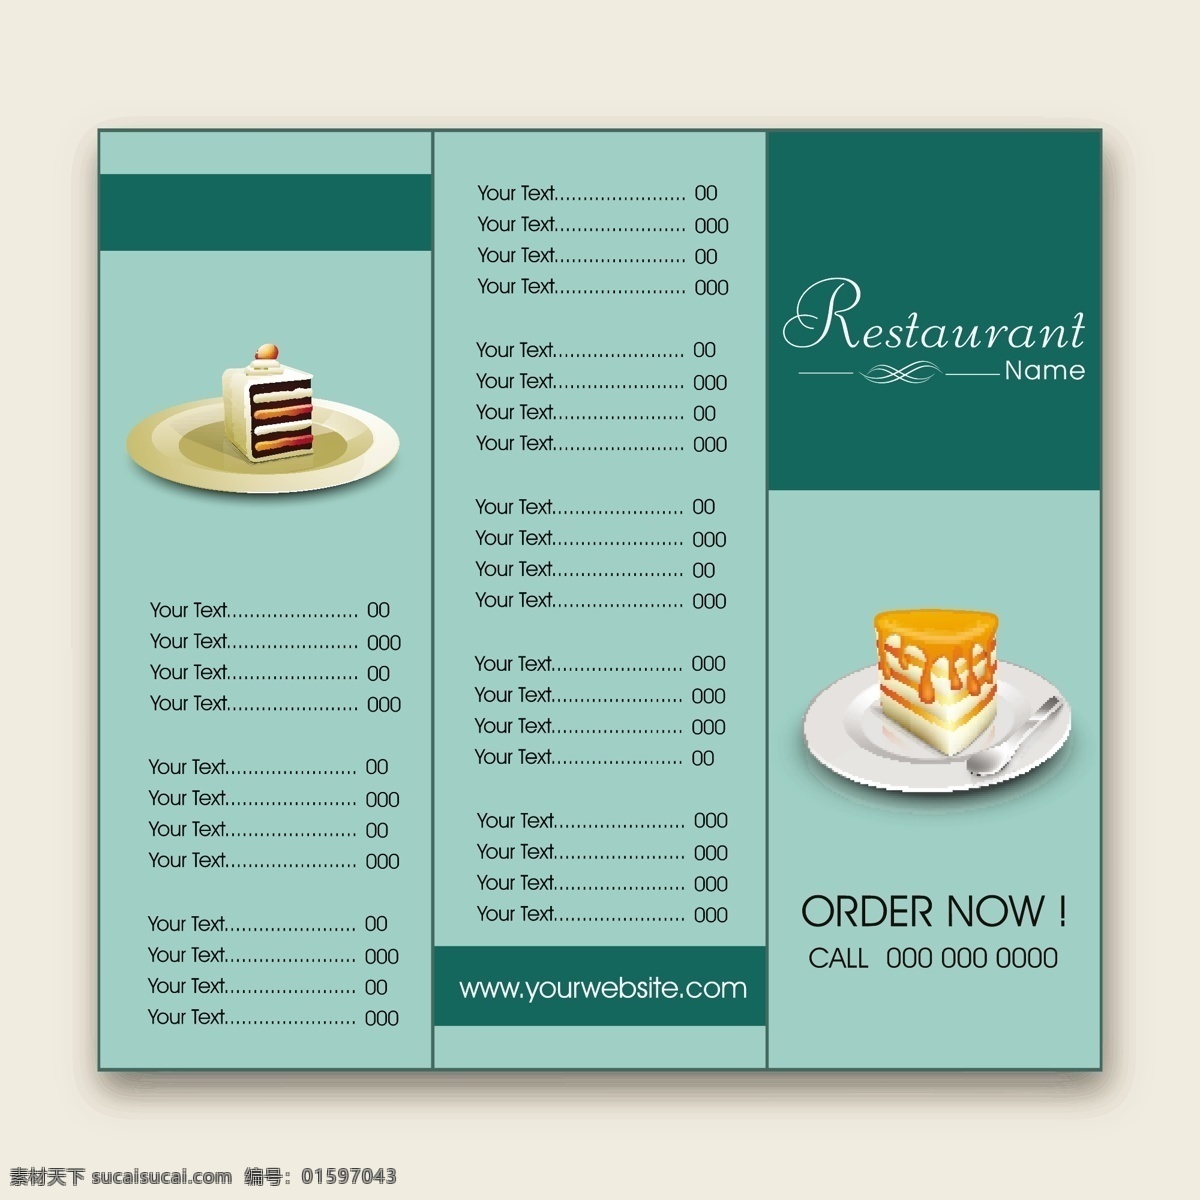 美味 蛋糕 菜单 矢量 模板下载 餐饮美食 美食 食物 甜食 菜单设计 标志图标 矢量素材 白色